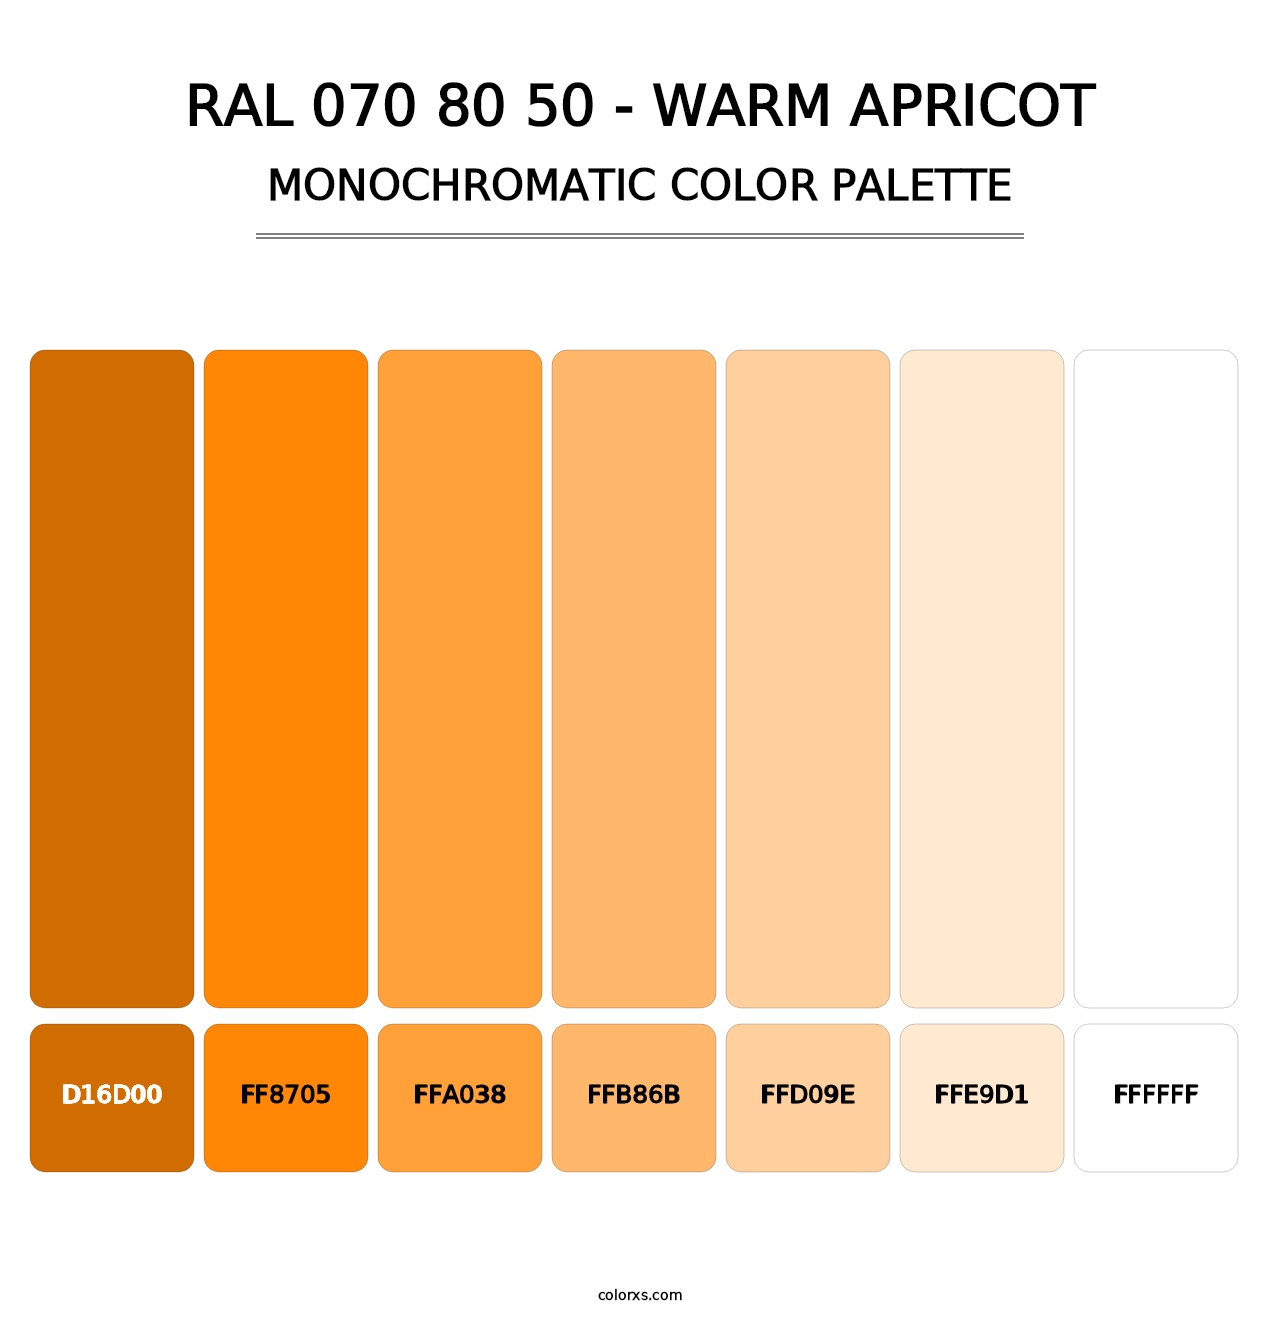 RAL 070 80 50 - Warm Apricot - Monochromatic Color Palette